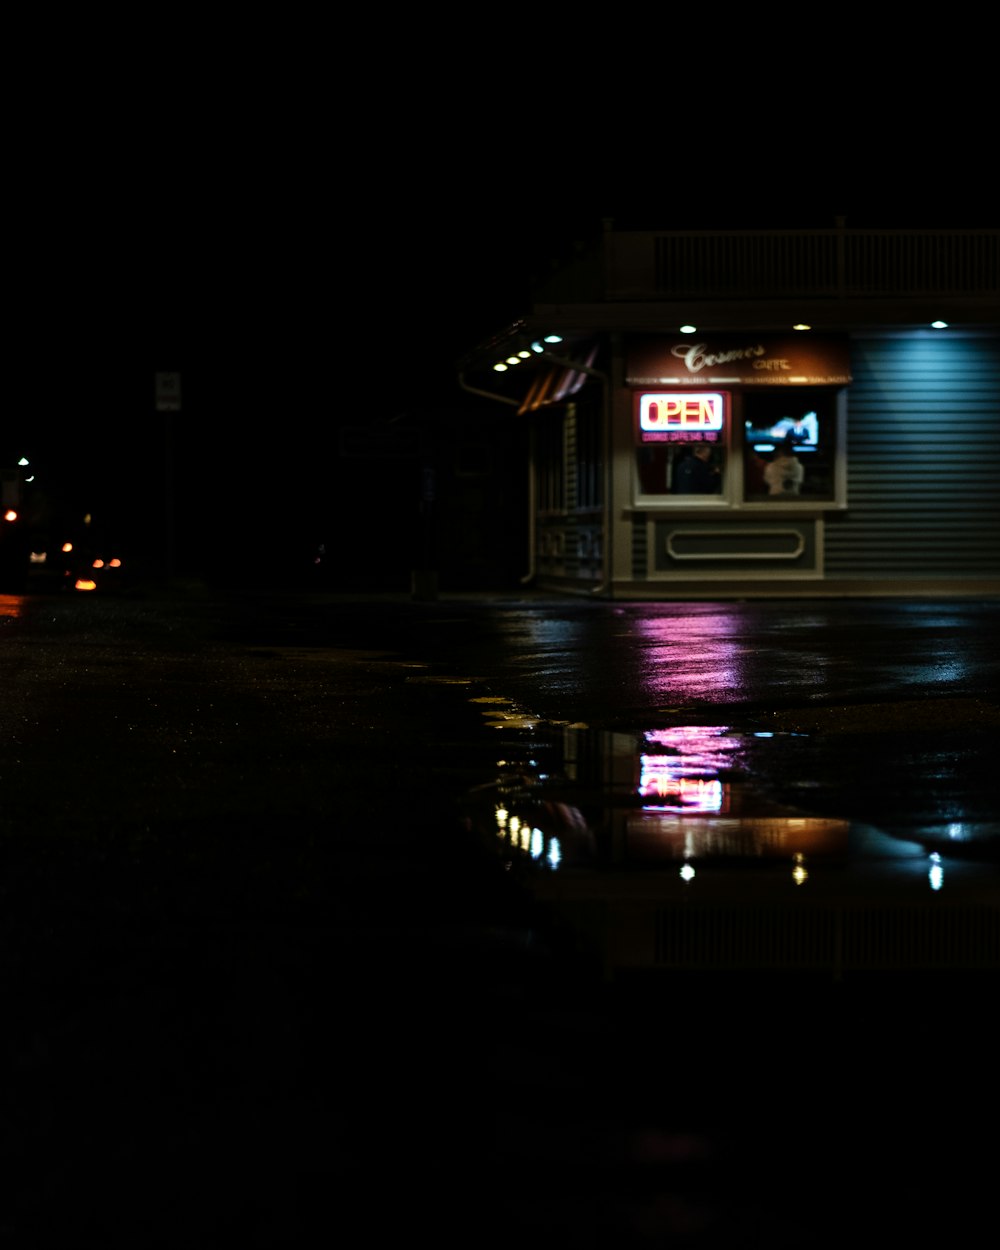 Una tienda a oscuras y un charco que refleja las luces de neón desde el escaparate de la tienda